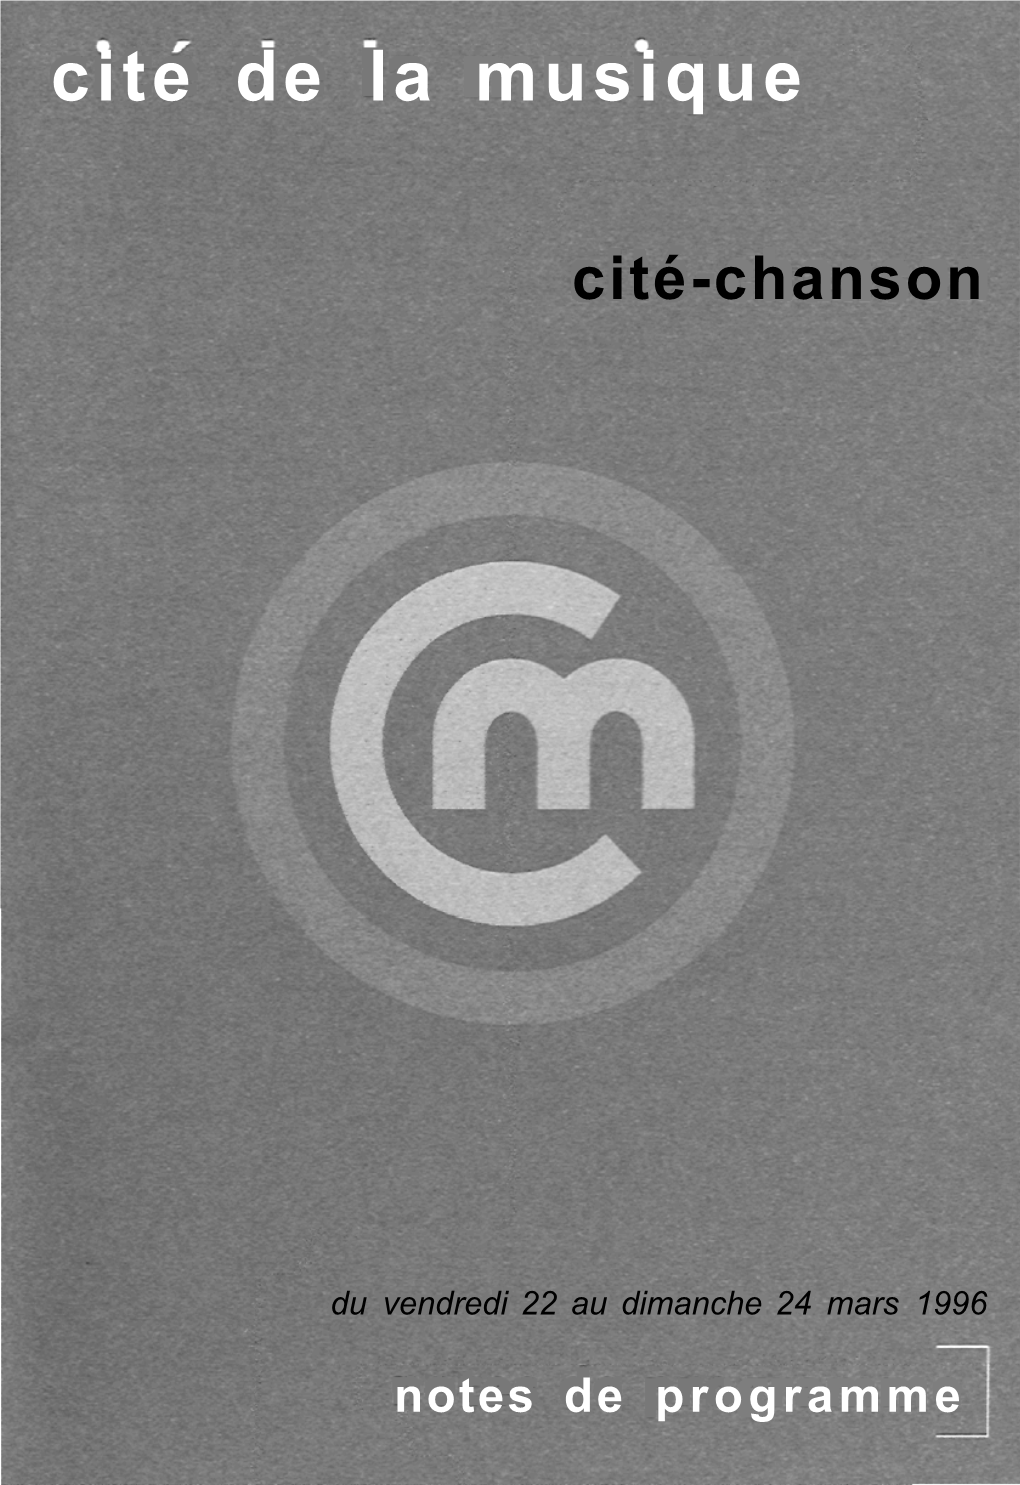 Cité-Chanson